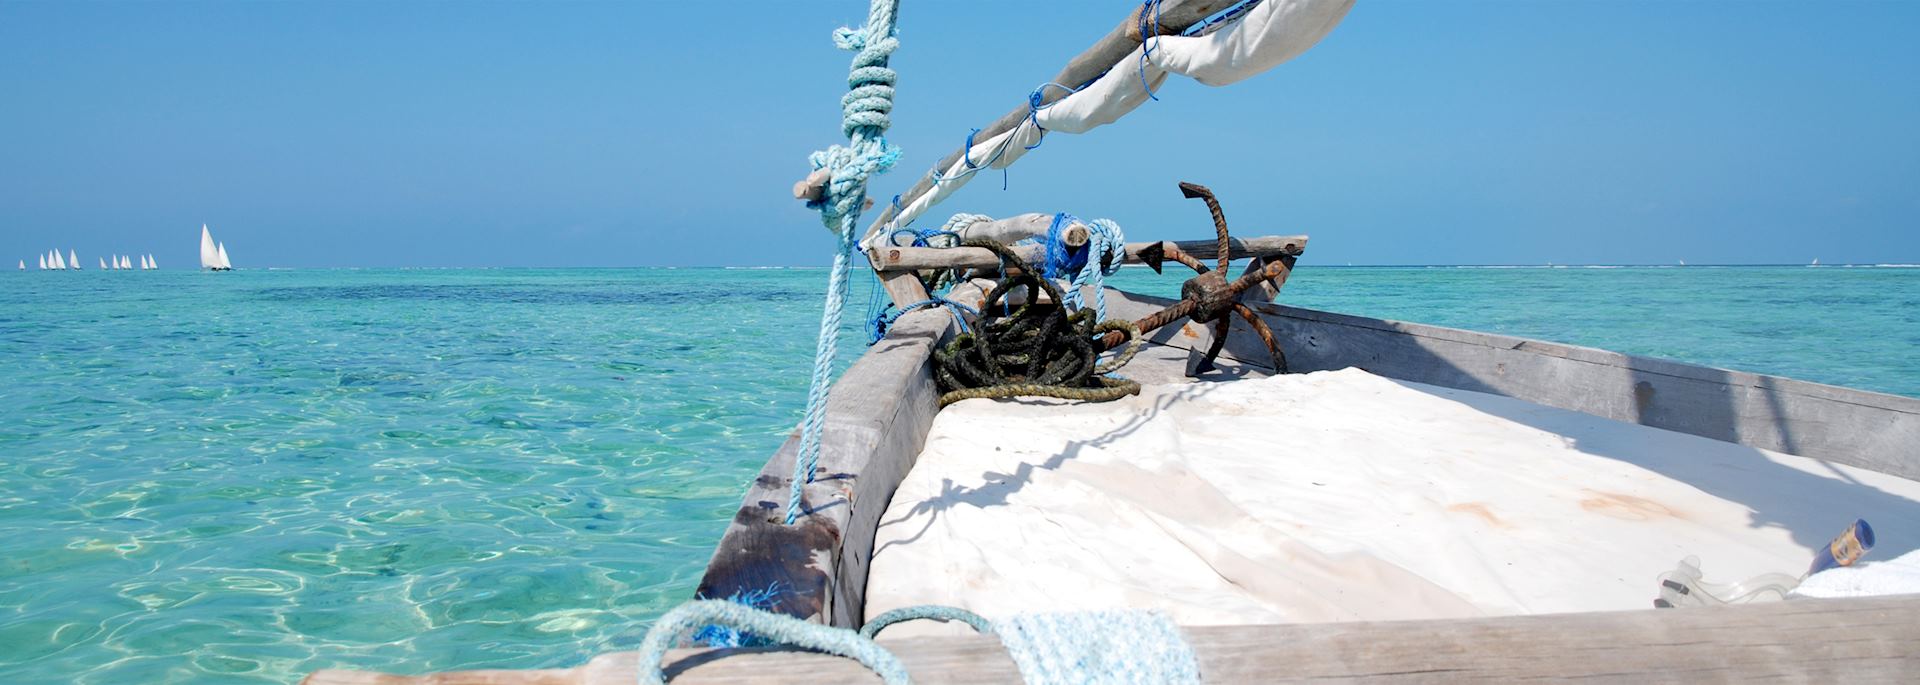 Dhow sailing, Zanzibar